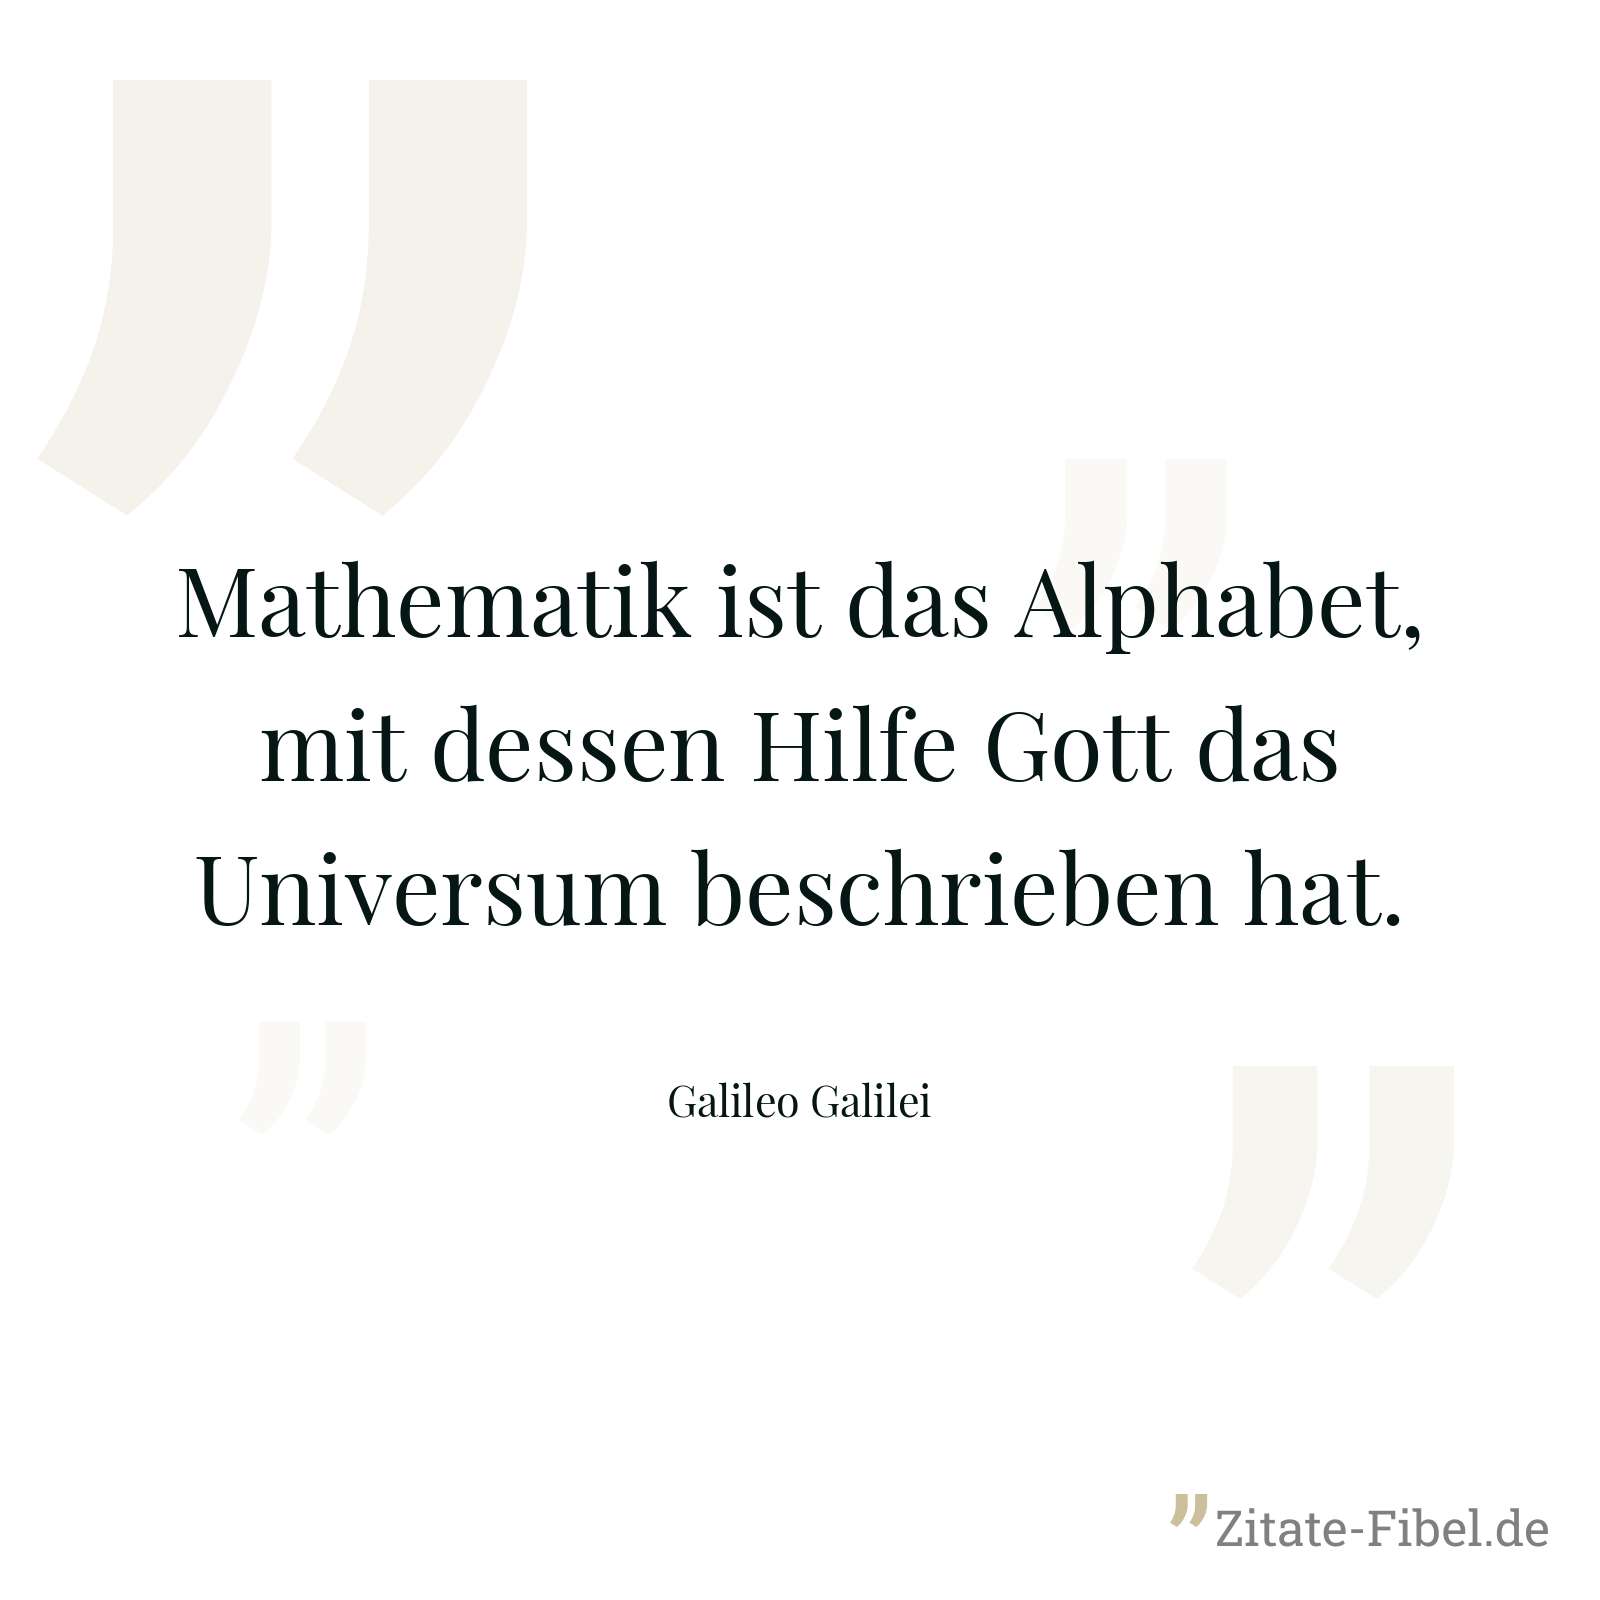 Mathematik ist das Alphabet, mit dessen Hilfe Gott das Universum beschrieben hat. - Galileo Galilei